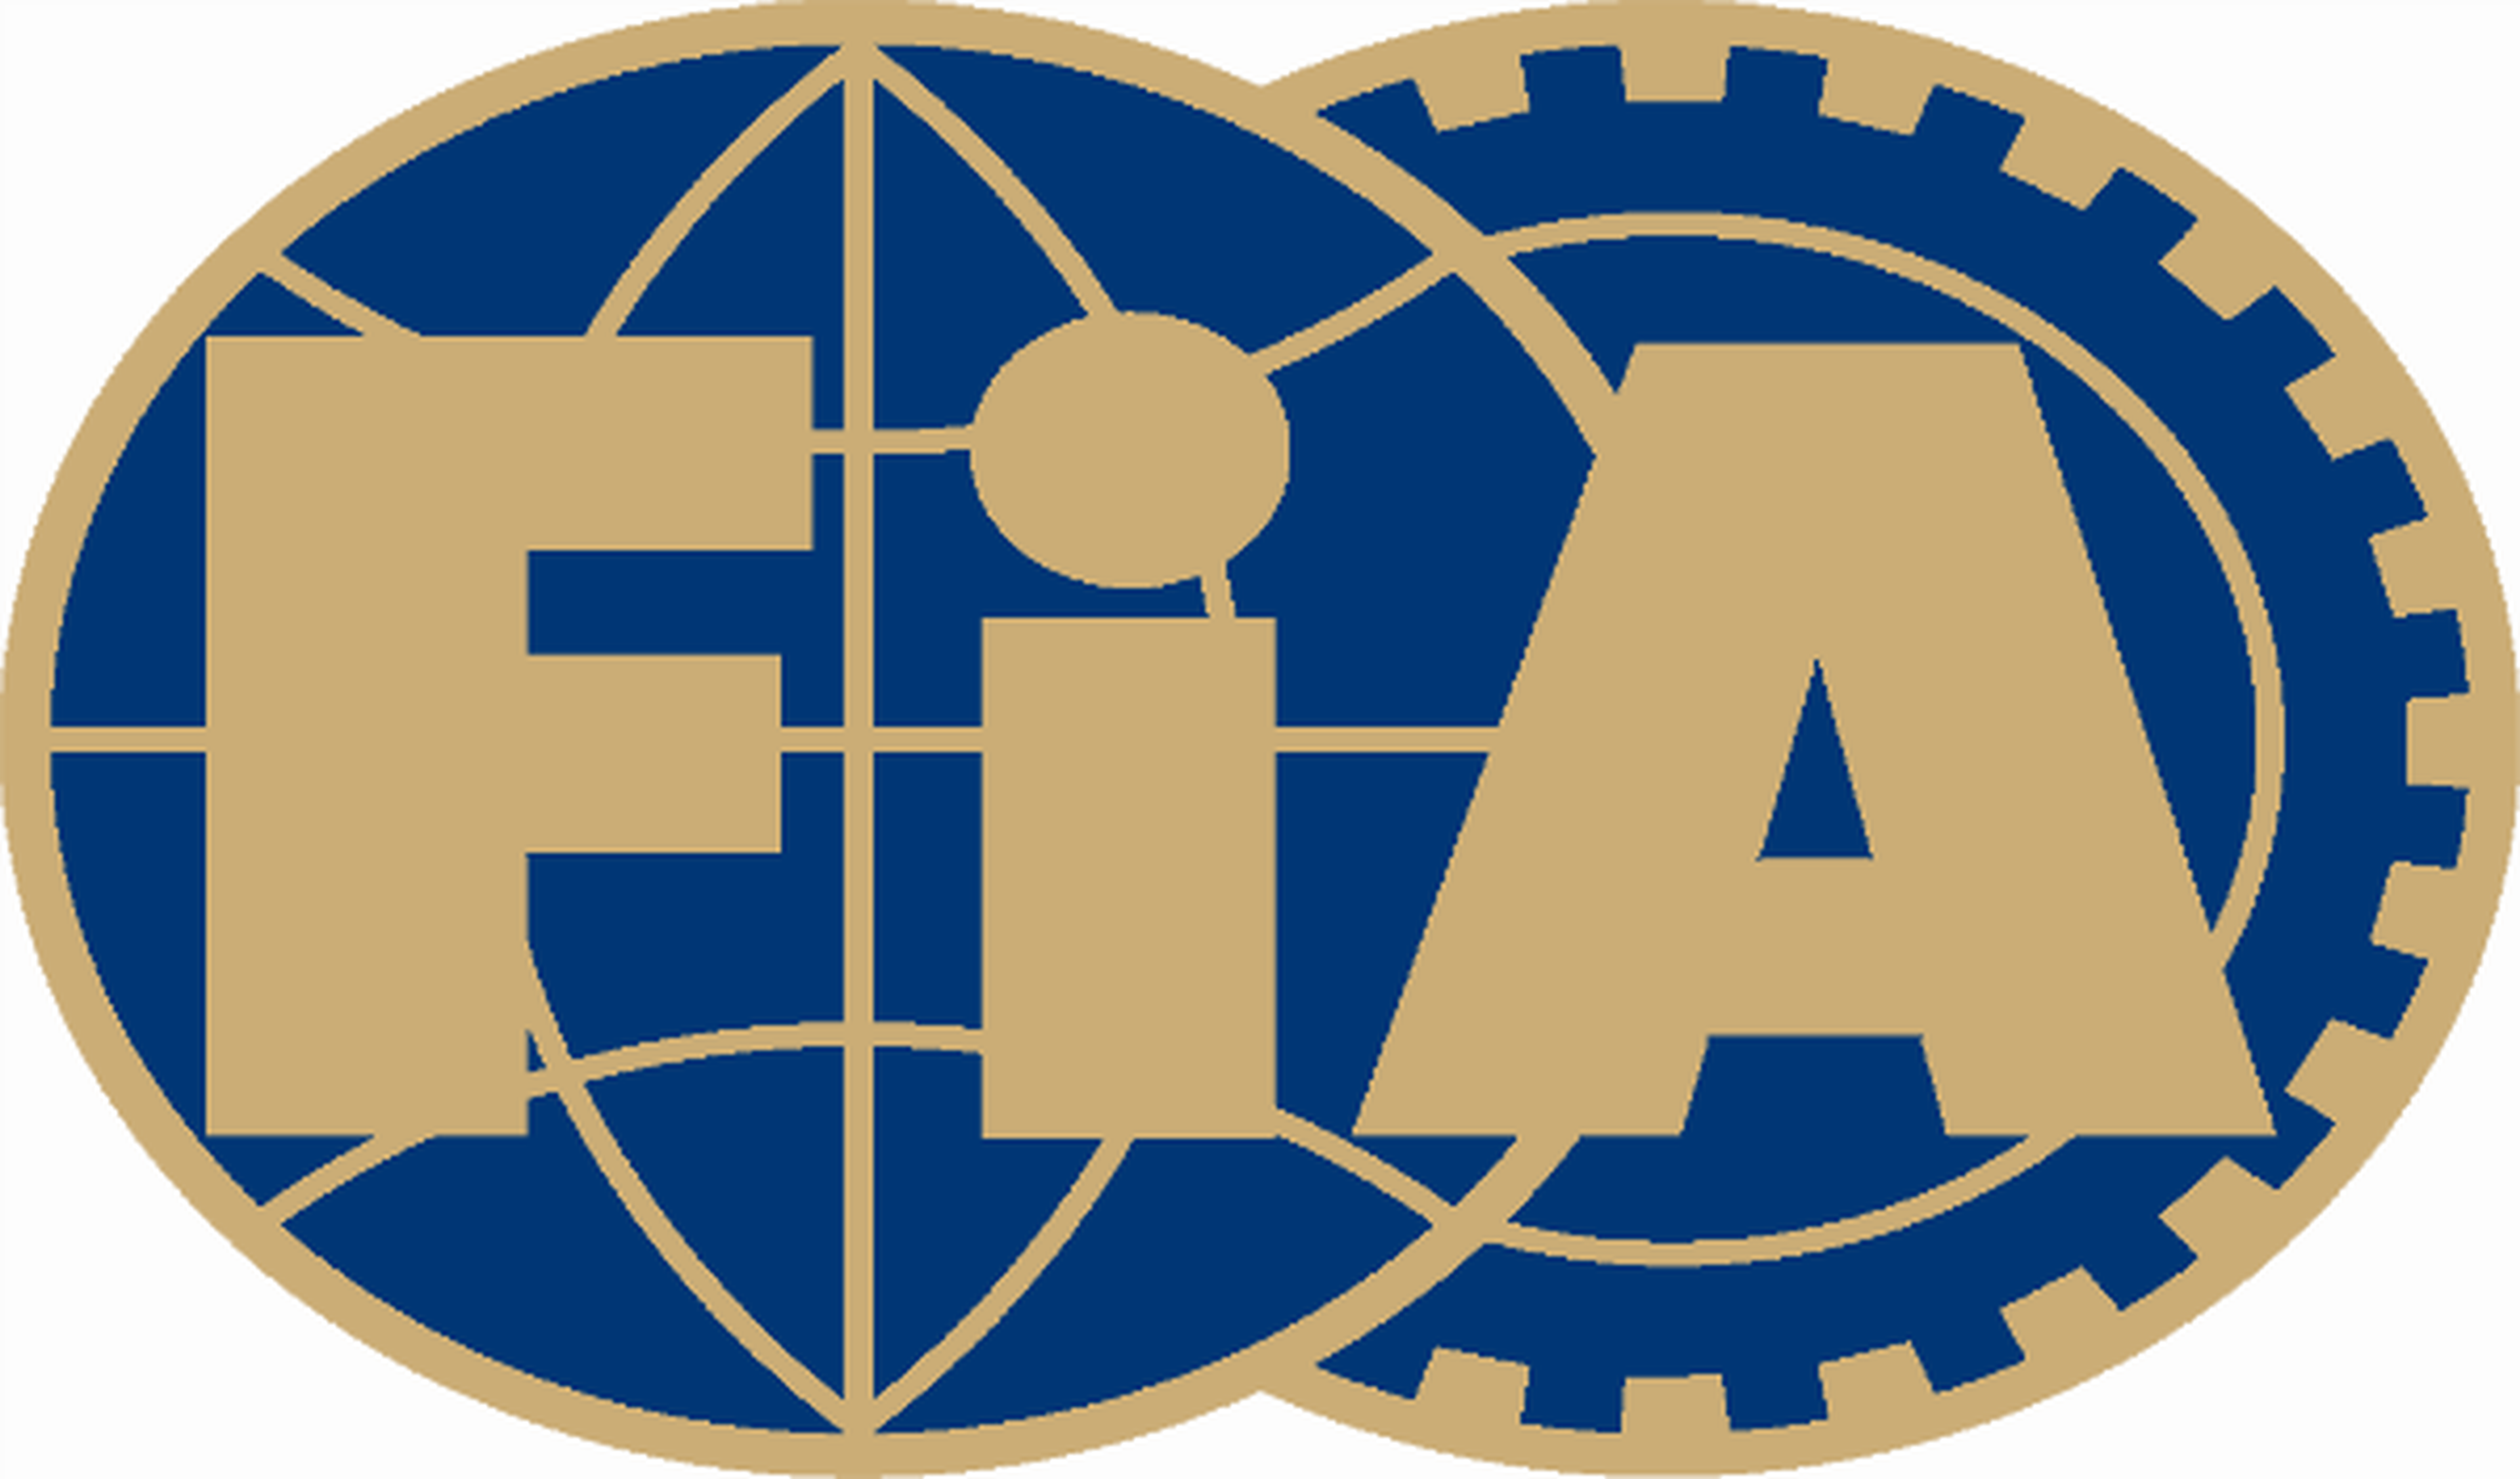 La FIA abrirá su universidad a finales de 2012